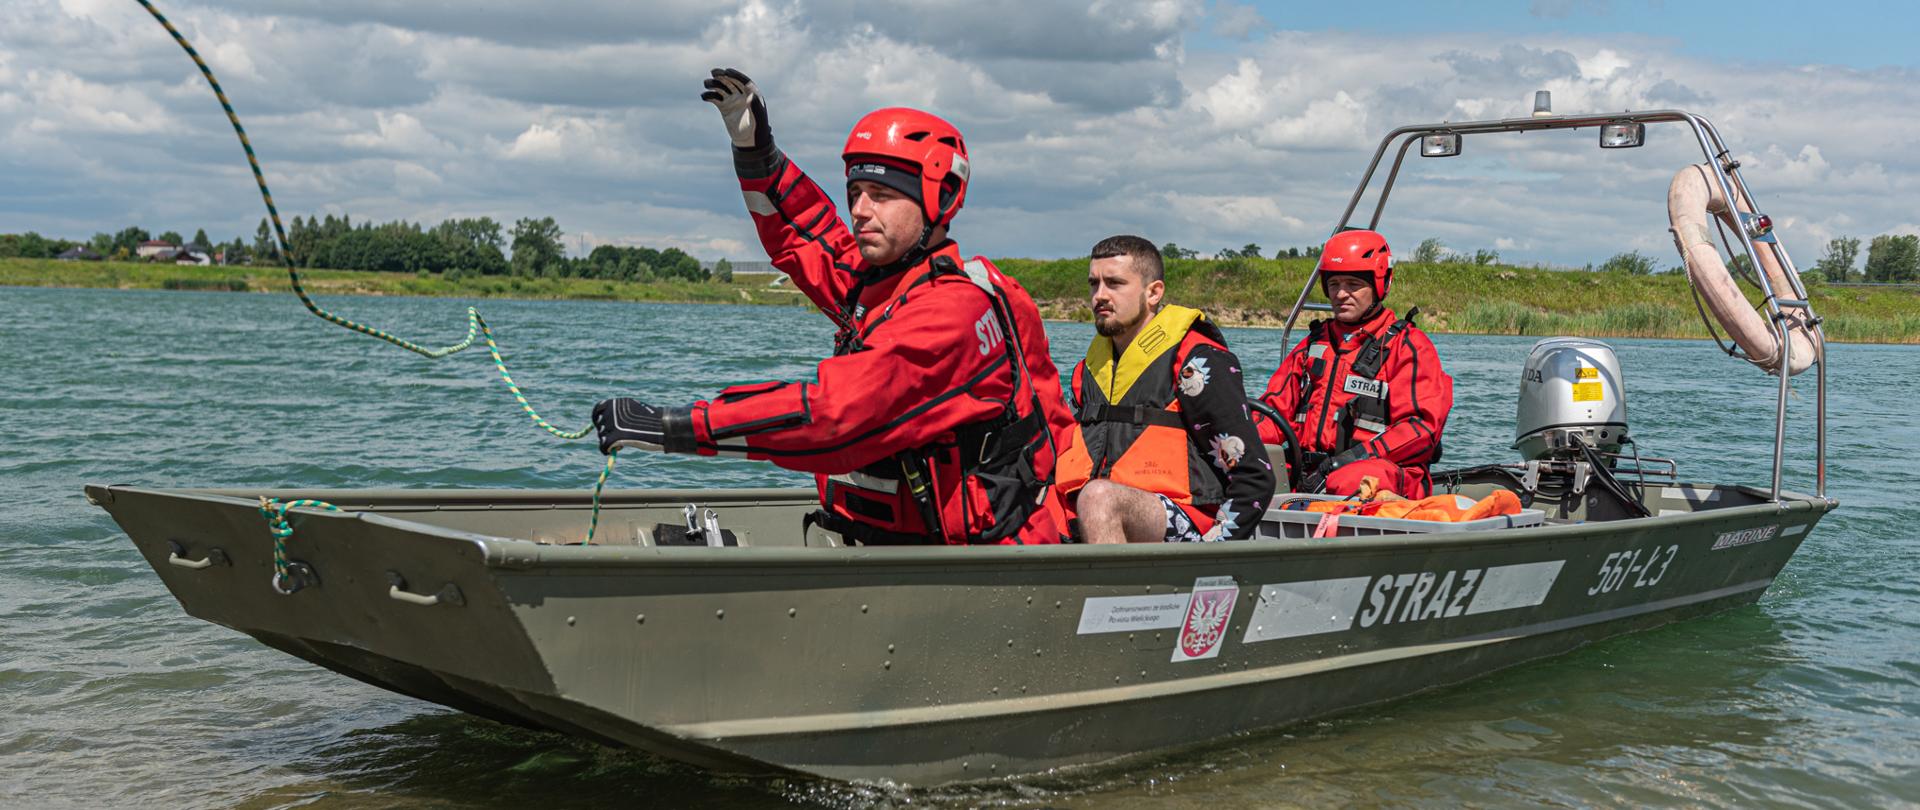 Na zdjęciu dwóch strażaków w łodzi dopływających do brzegu. W łodzi również znajduje się jedna osoba w kamizelce ratunkowej.